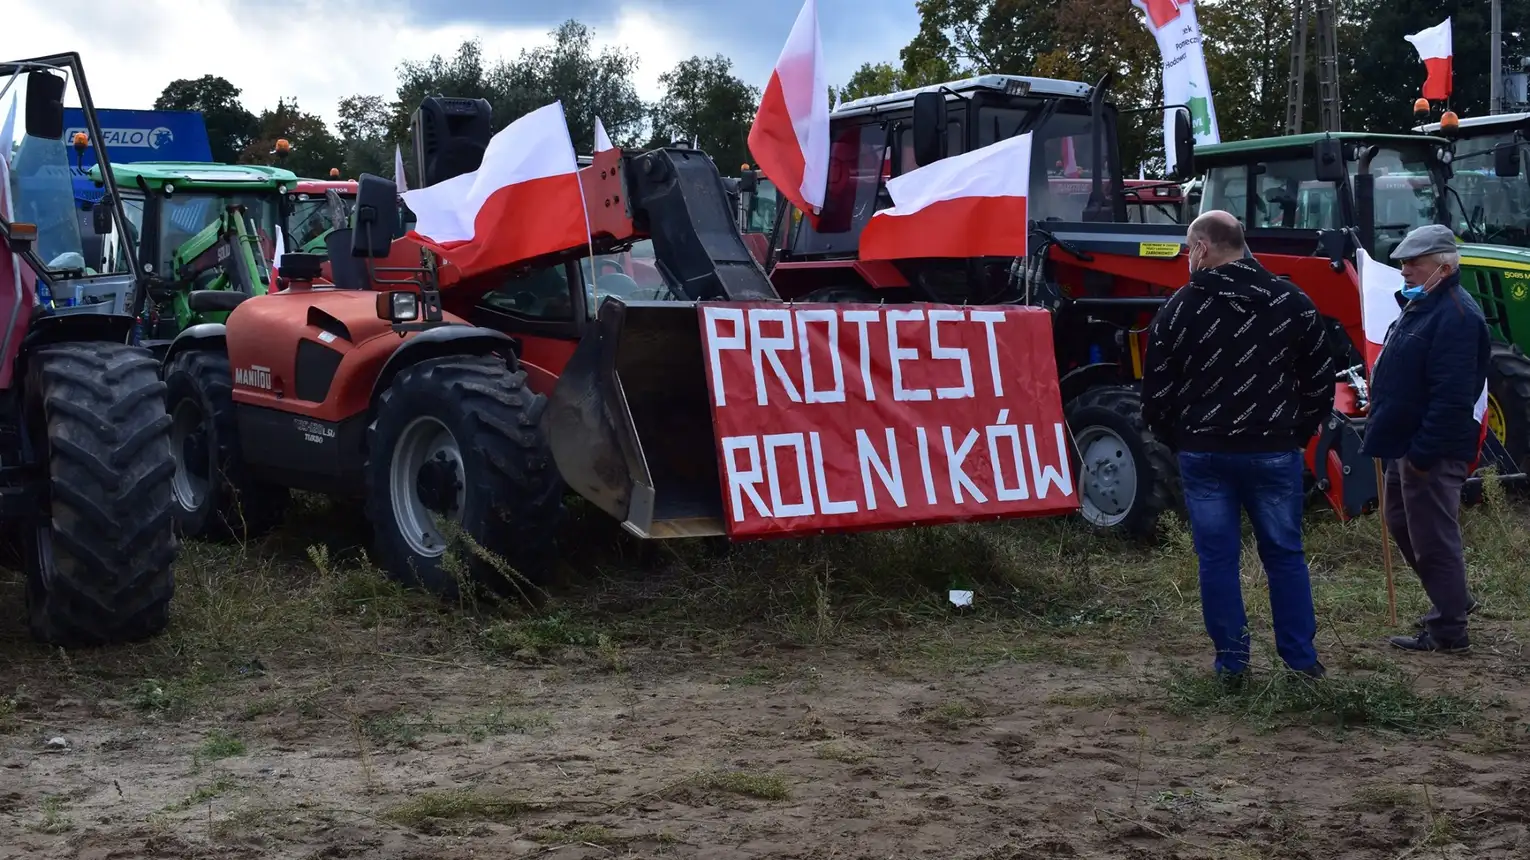 Drugi protest rolników w Poznaniu. Utrudnienia w ruchu i problemy komunikacyjne